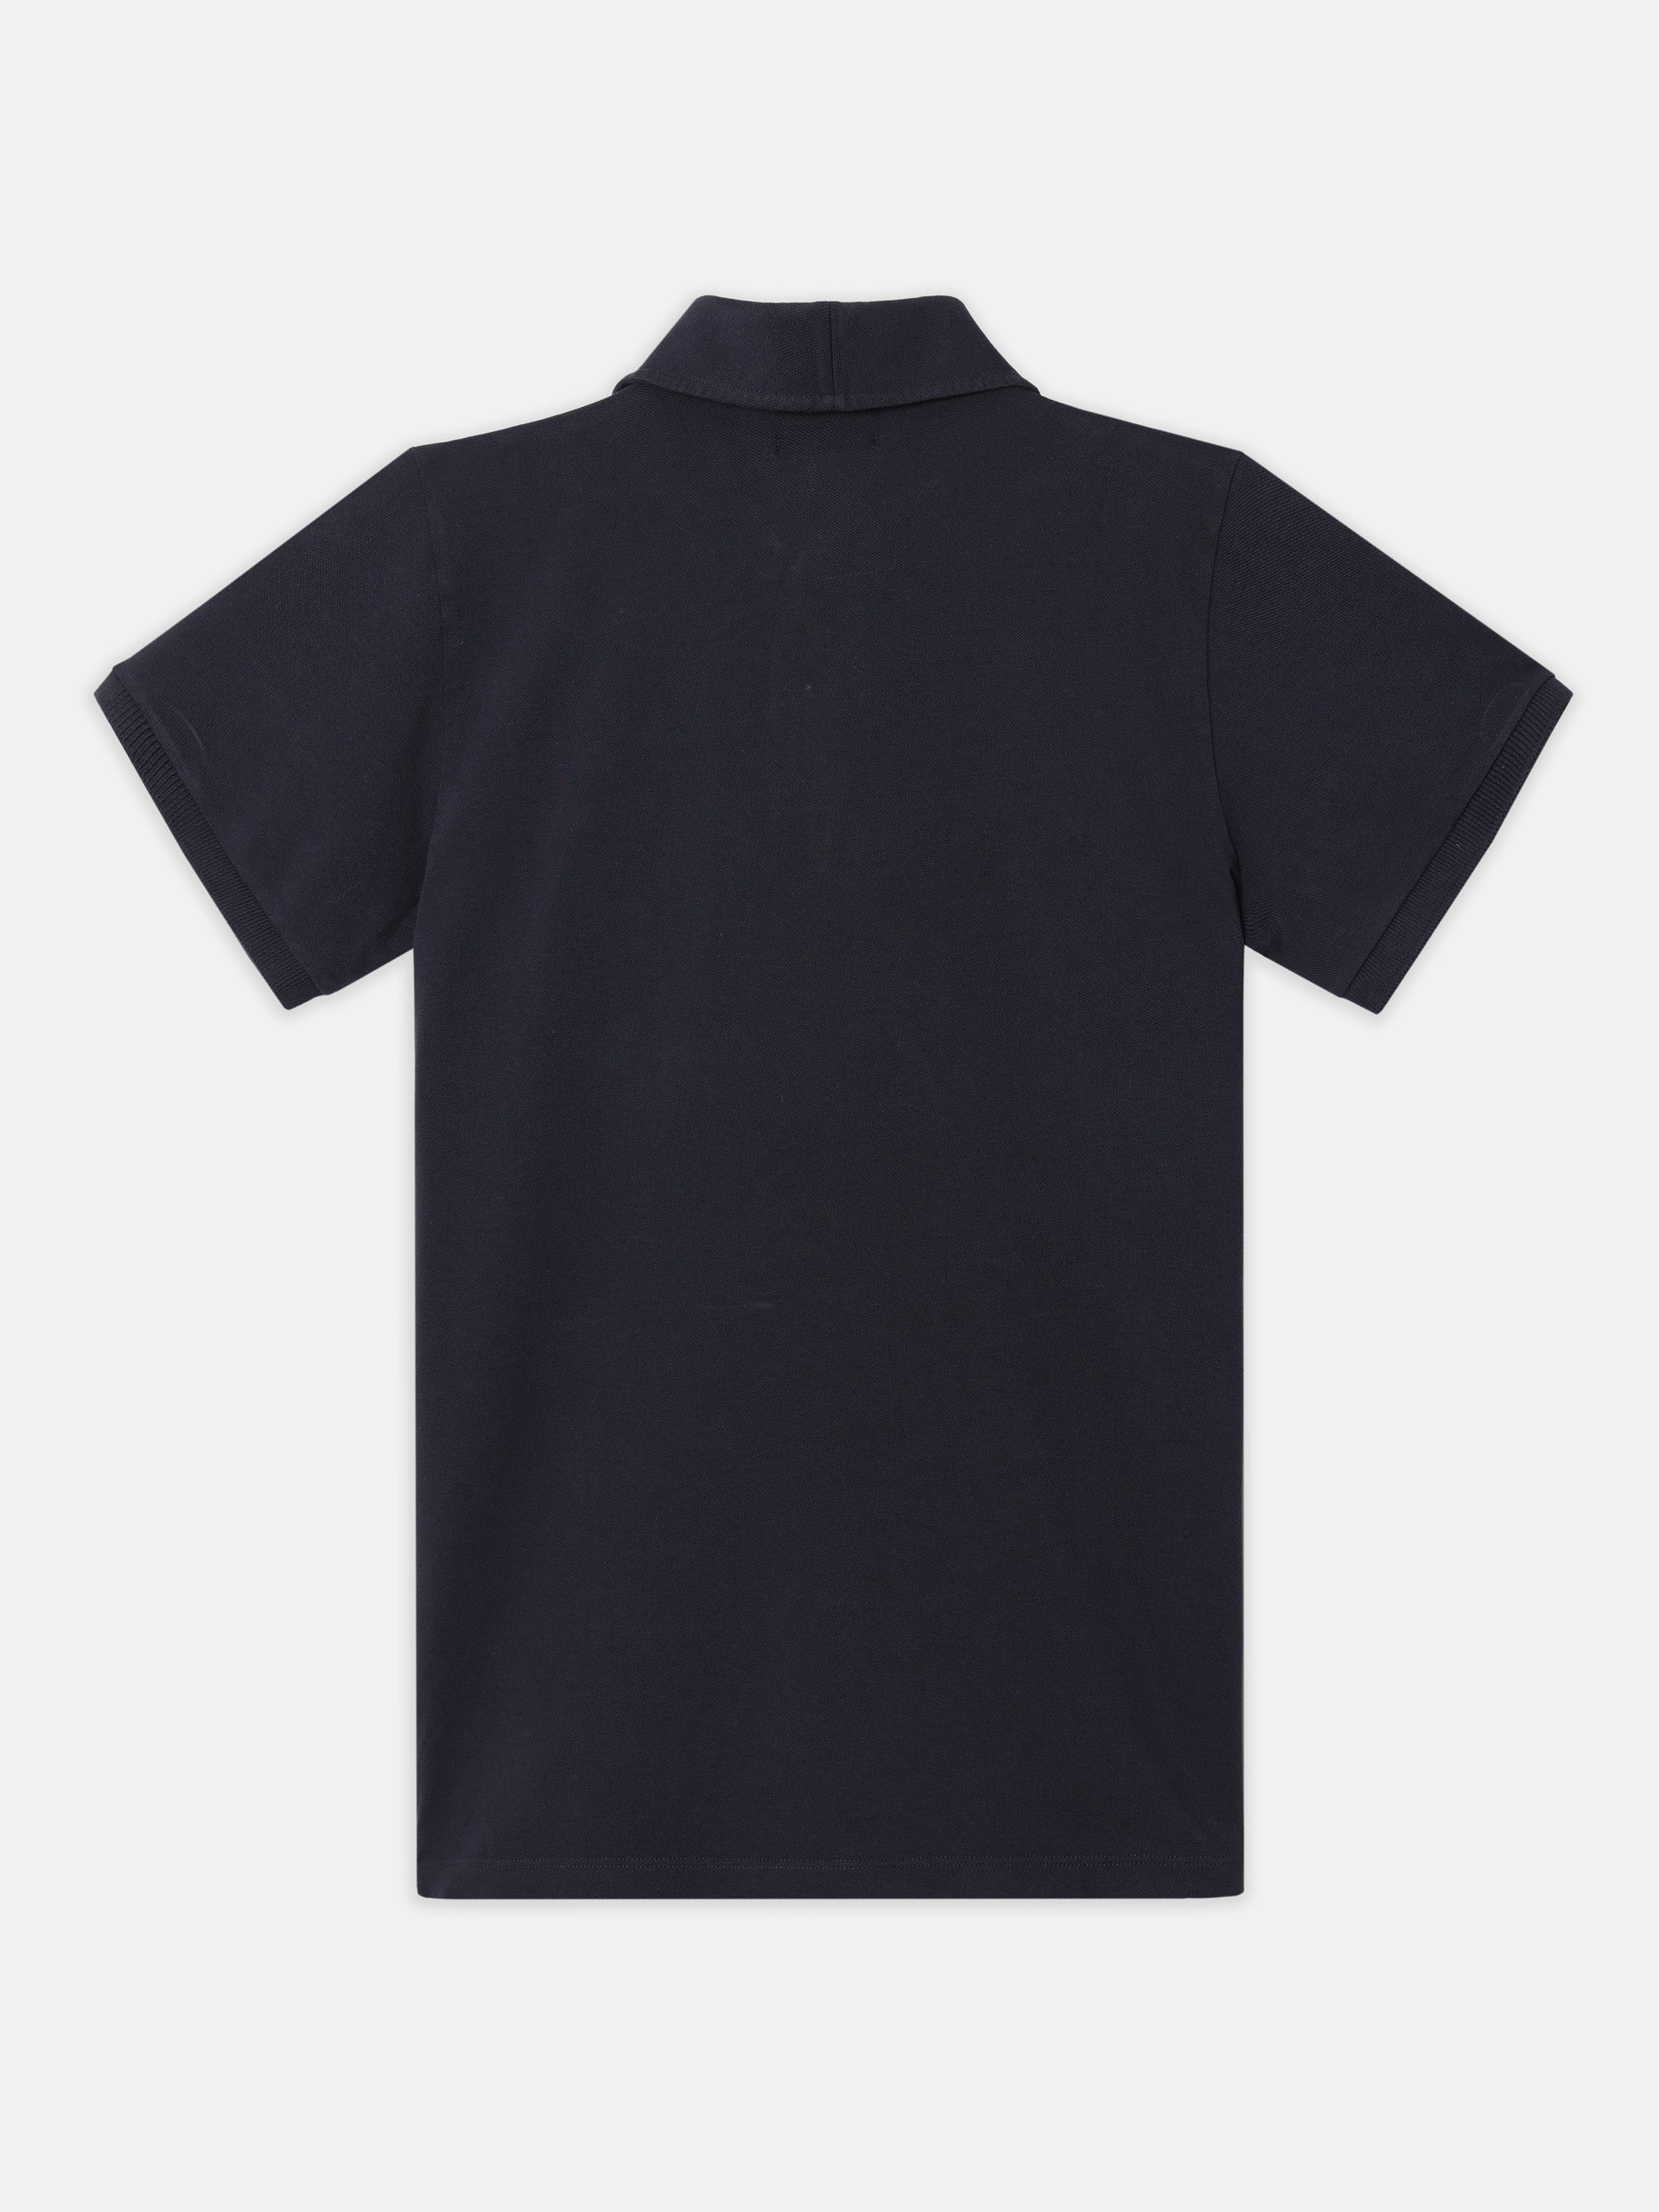 Silbon unique navy blue polo shirt